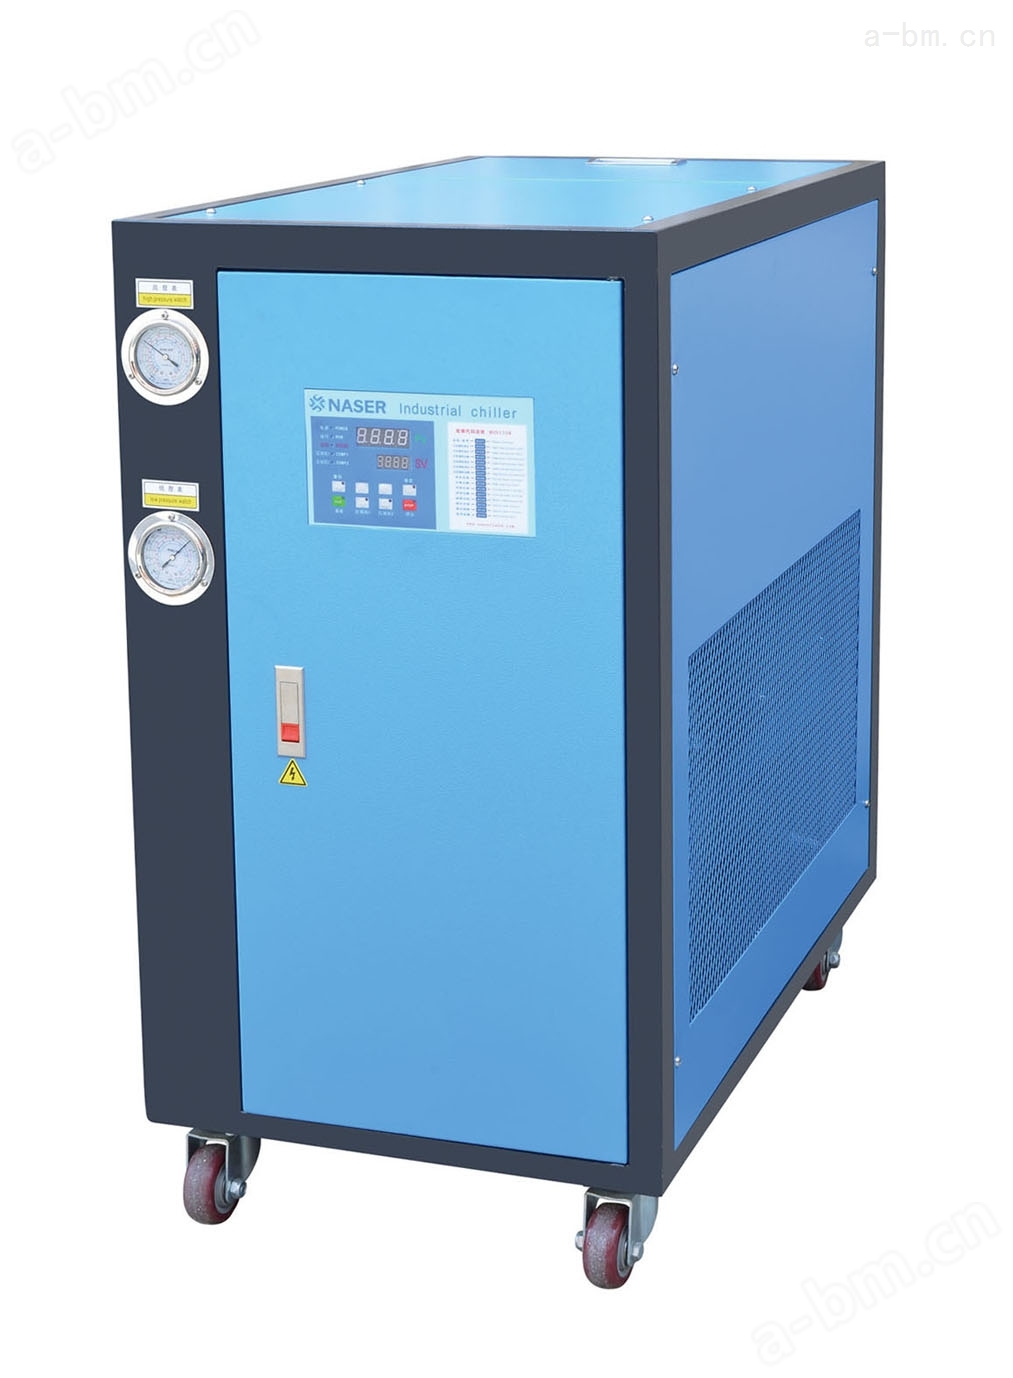 NASER 工业冷水机 冷水机械 冻水机械